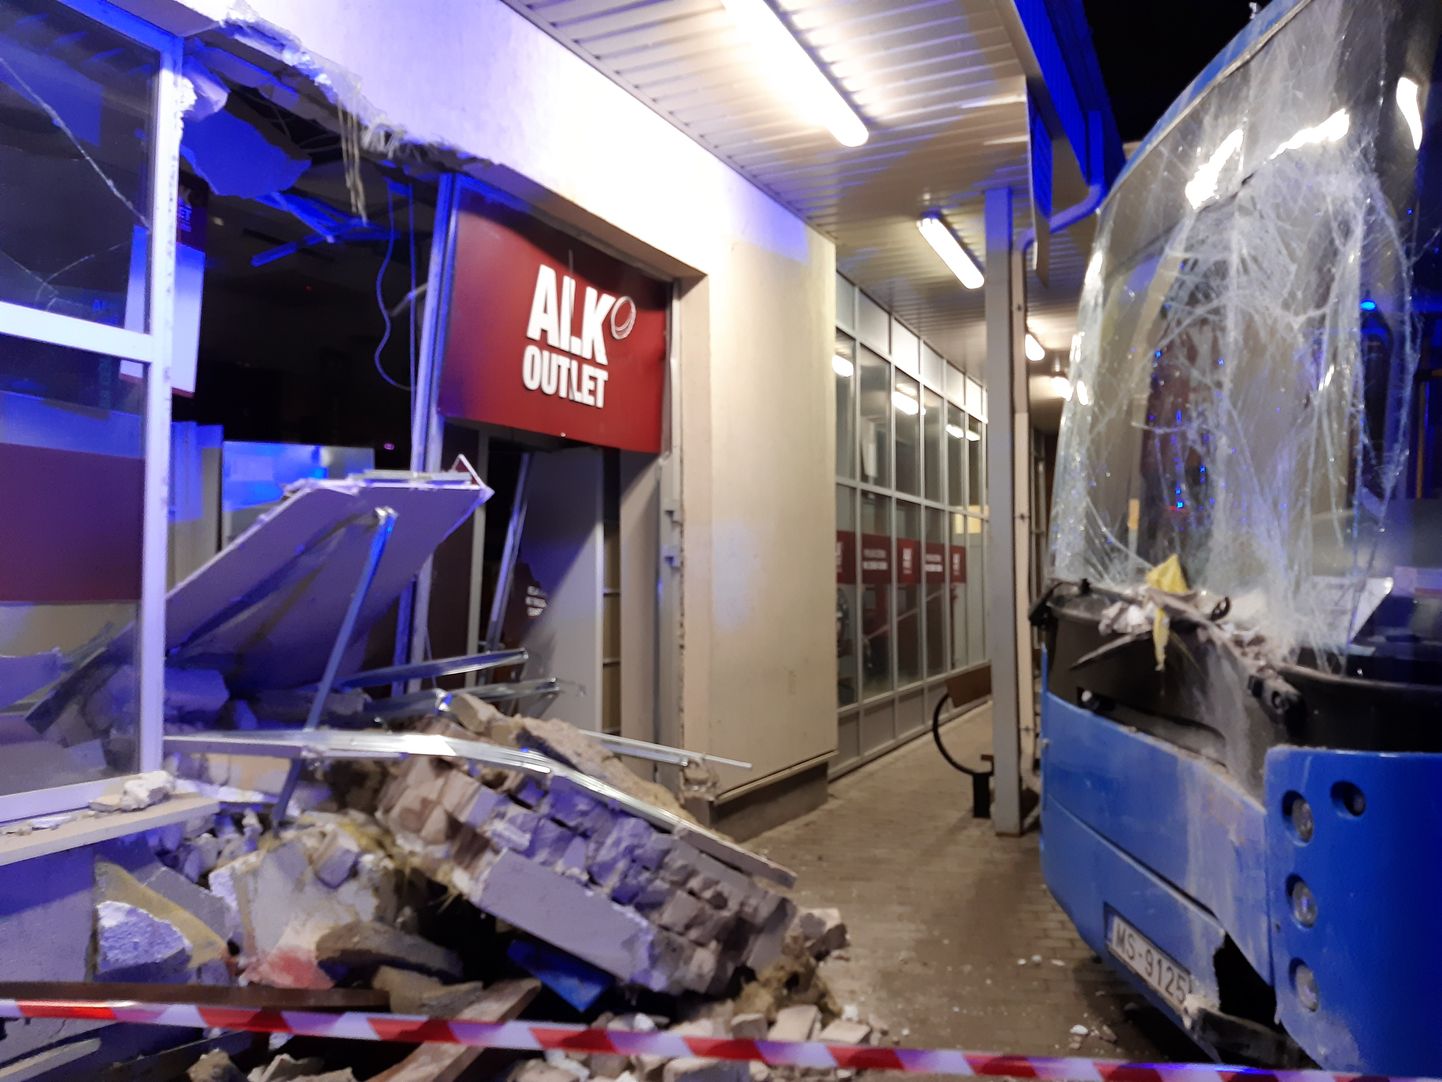 Balvos vietējas nozīmes autobuss, taranējot soliņu, ietriecies veikala "Alko Outlet" sienā, kas daļēji sabrukusi, izbiruši ēkas fasādes logu un durvju stikli.